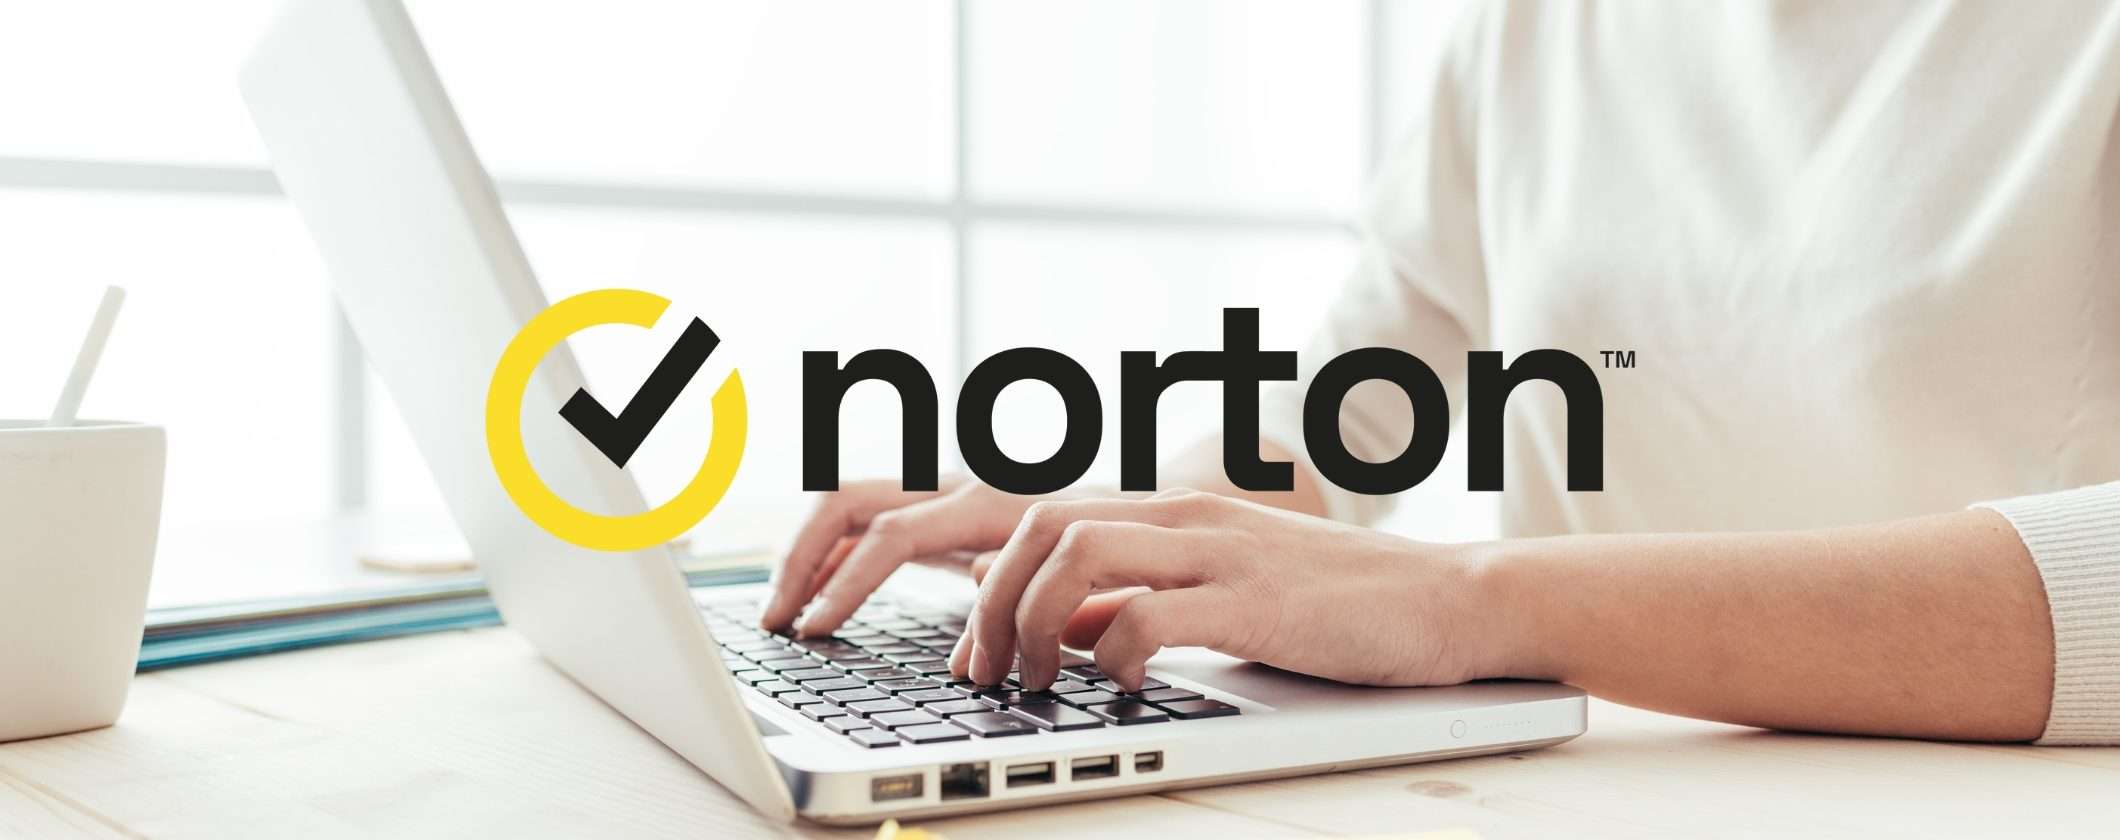 Norton 360 Standard, oltre l'antivirus: VPN, protezione e molto altro